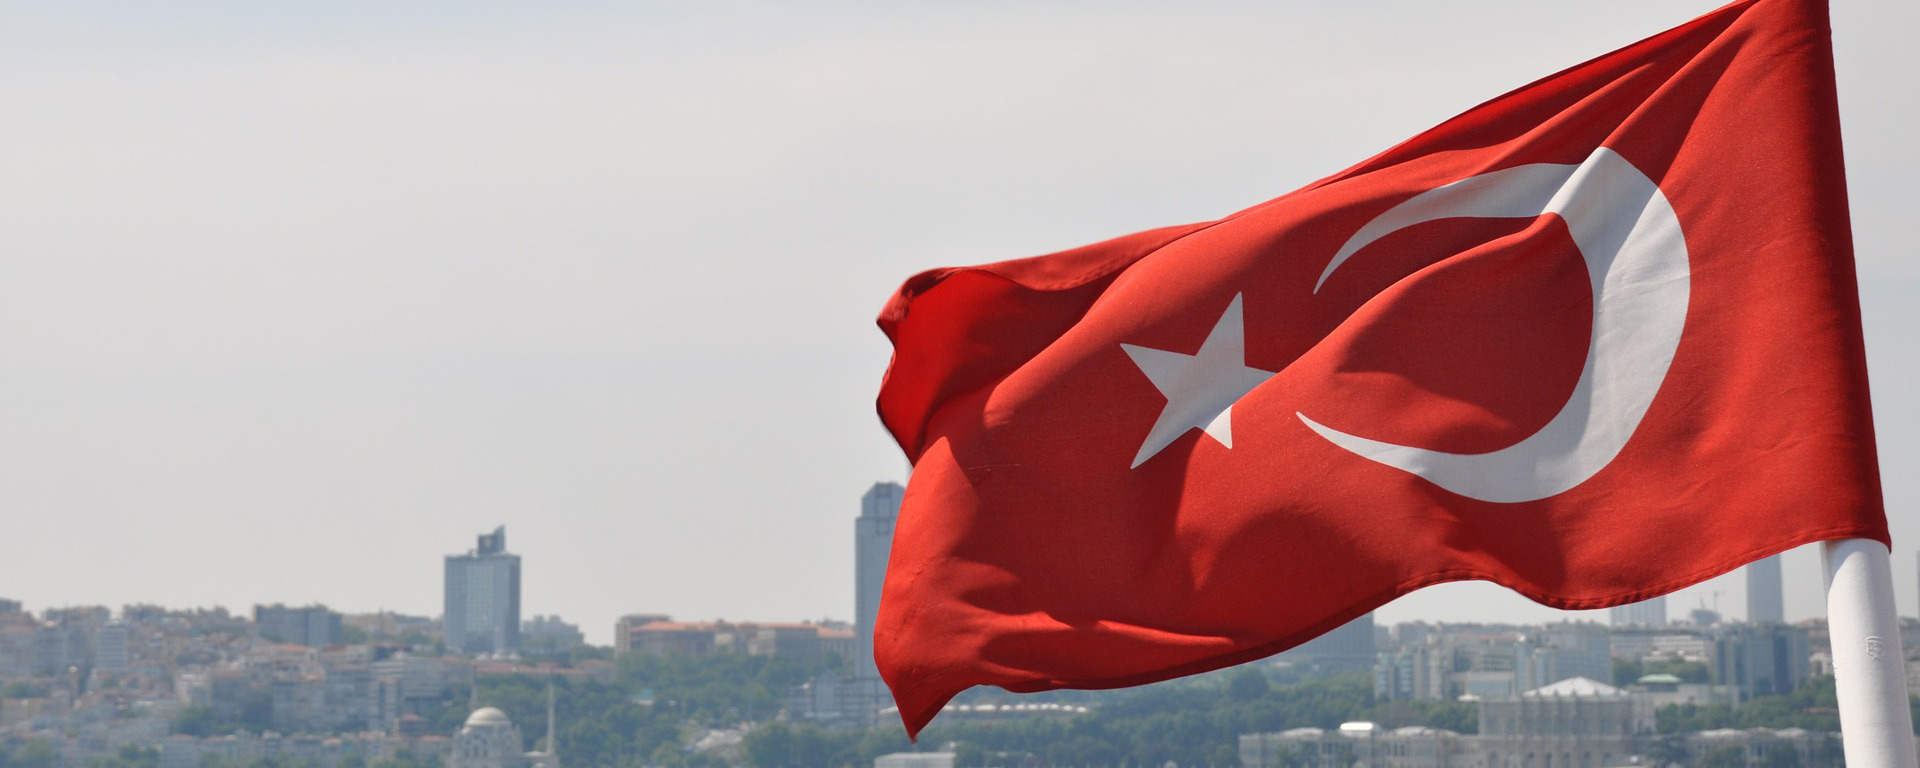 Ύψωσαν τουρκική σημαία έξω από το Κέντρο Εκπαιδεύσεως Ανορθόδοξου Πολέμου στη Ρεντίνα – Μεγάλες οι ευθύνες του ΓΕΣ